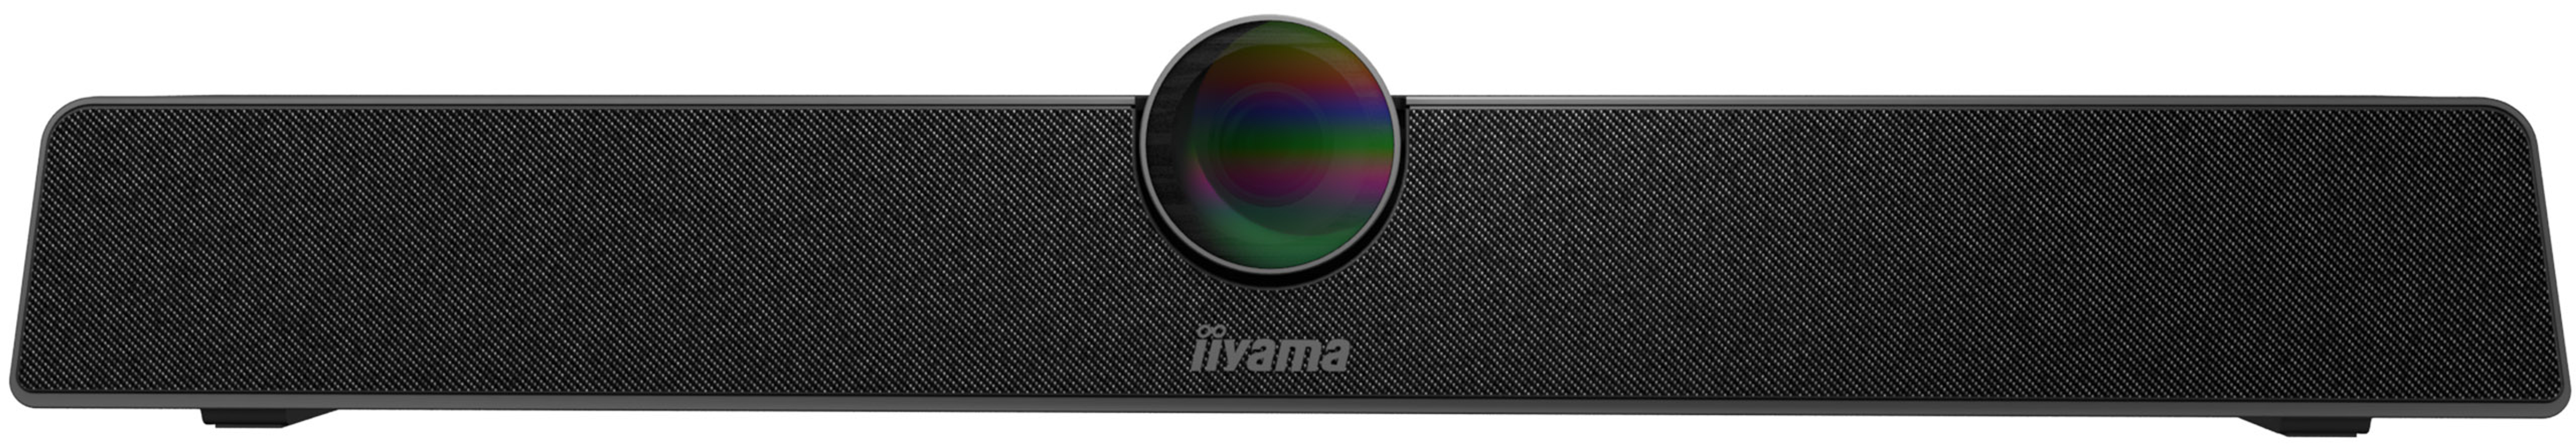 Webcam IIYAMA CAM120ULB-1 UC